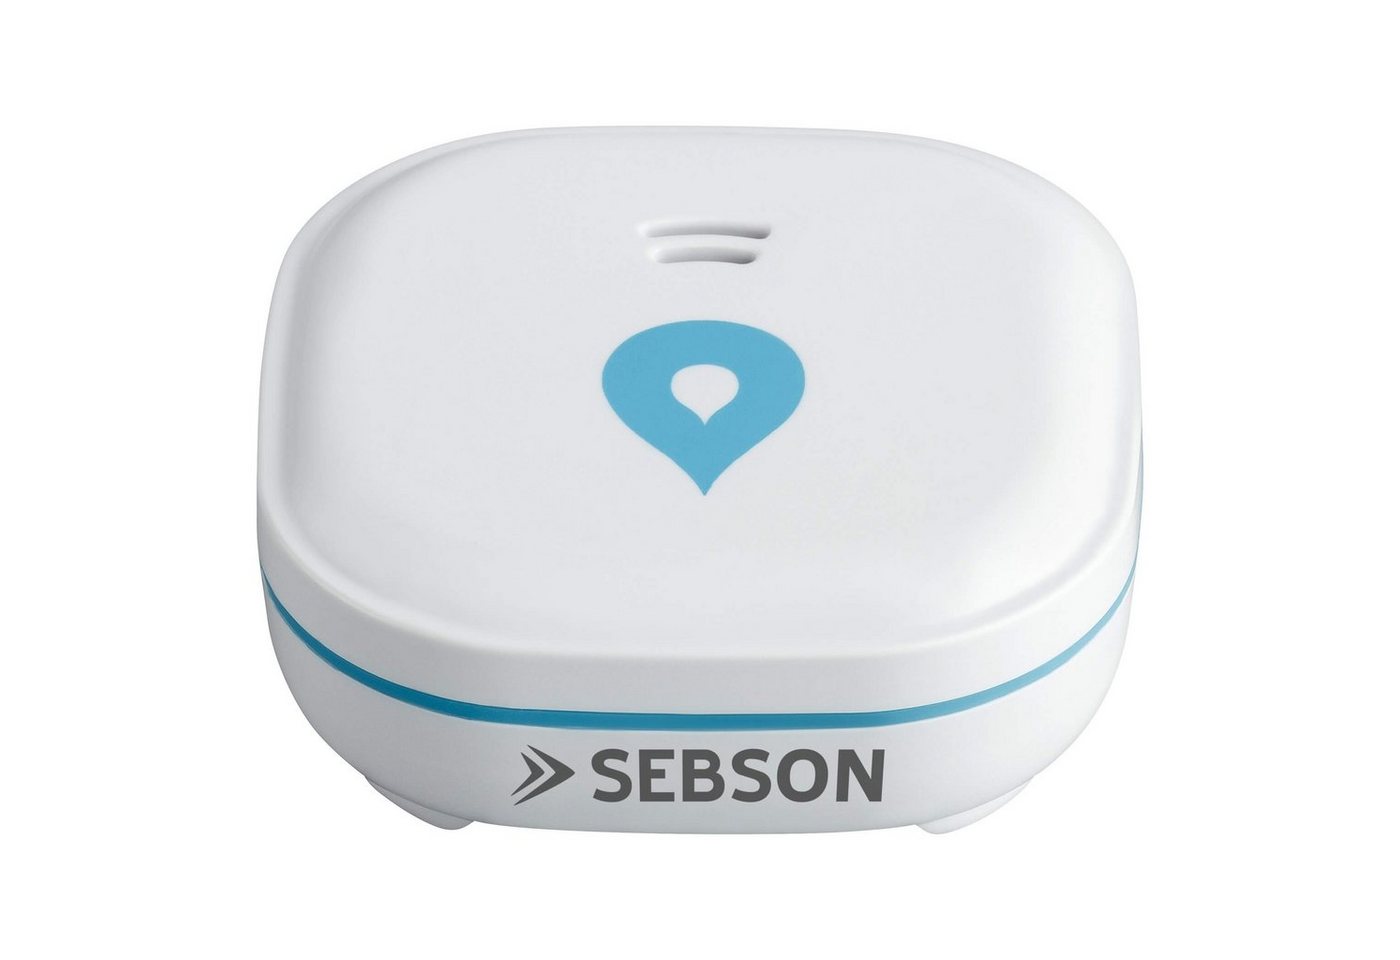 SEBSON Wassermelder mini GS153, 10 Jahres Langzeit-Batterie - 60x60x24,2mm Wassermelder von SEBSON